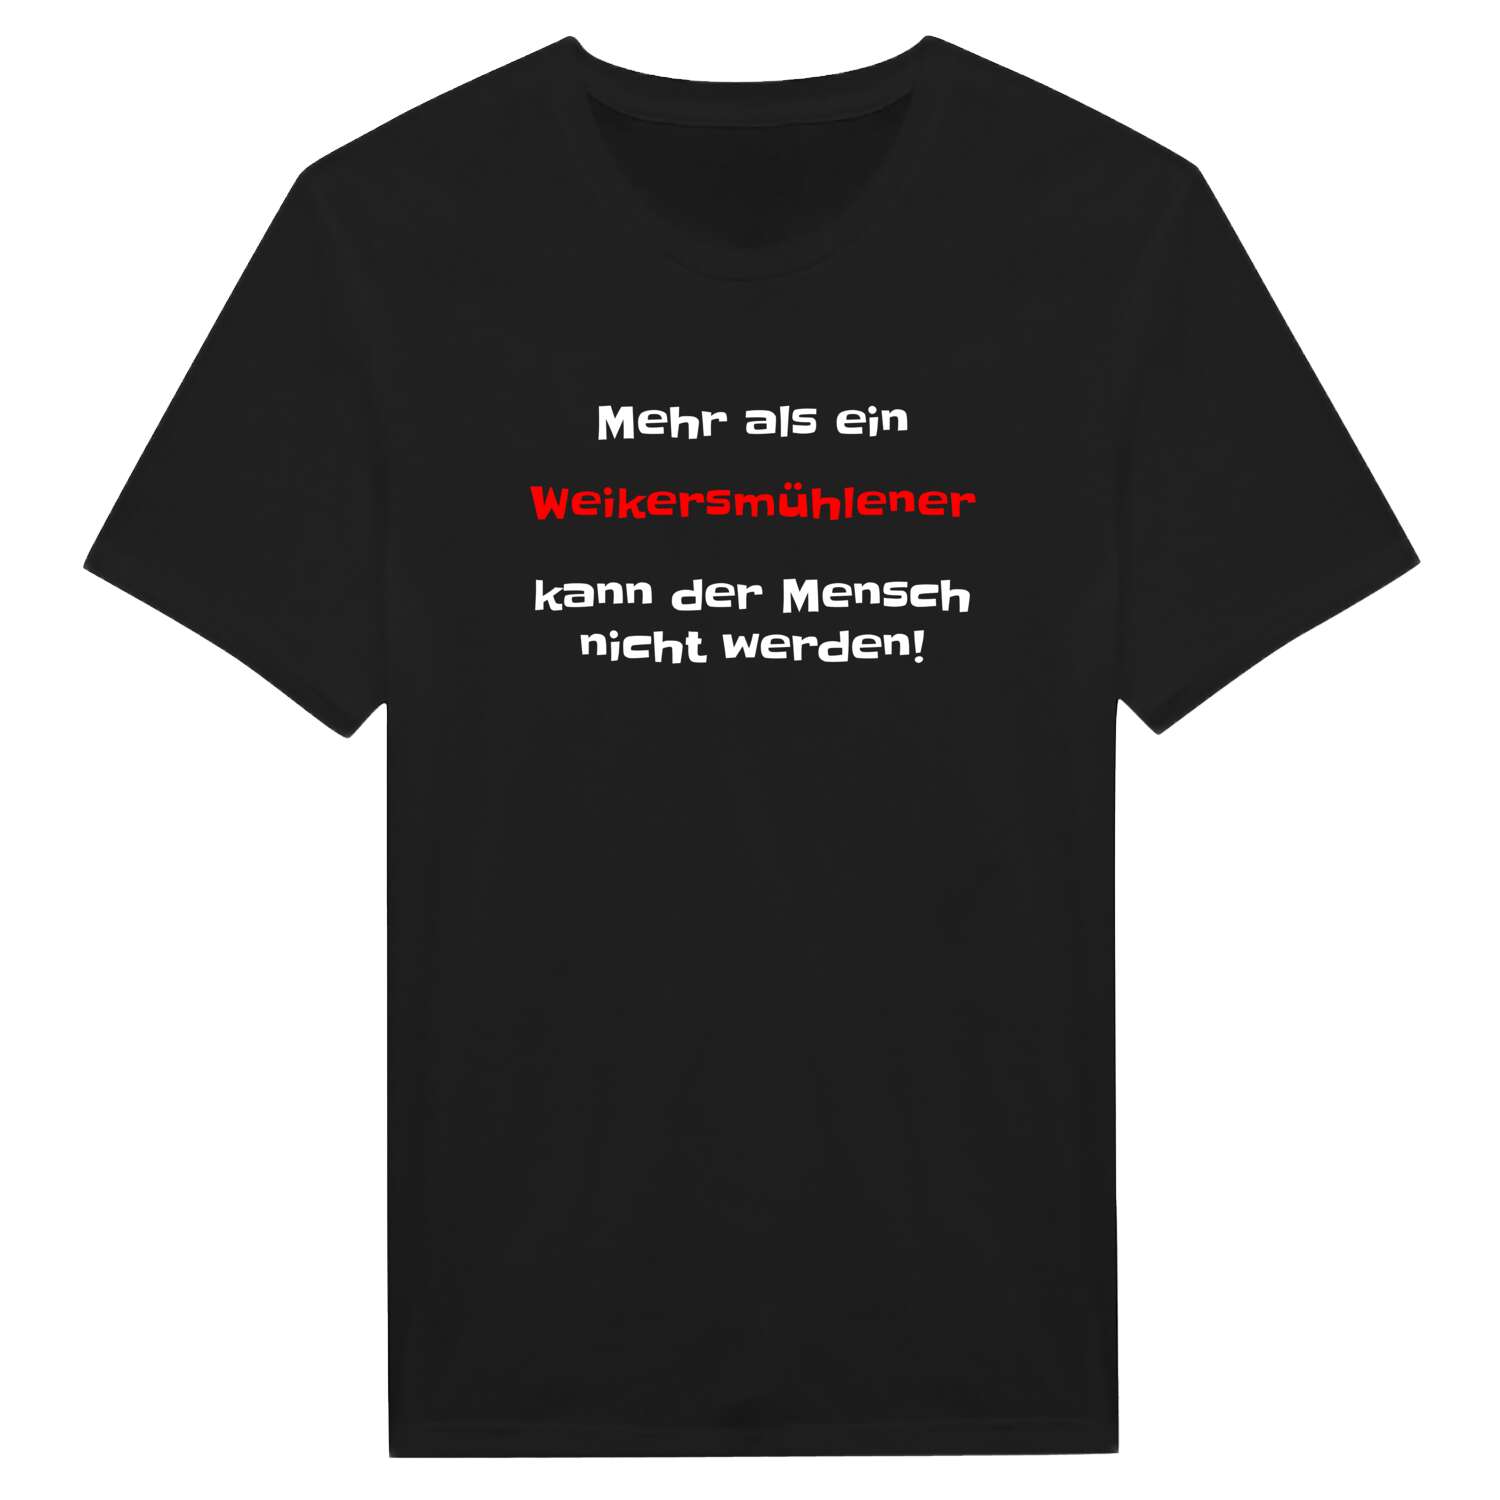 Weikersmühle T-Shirt »Mehr als ein«